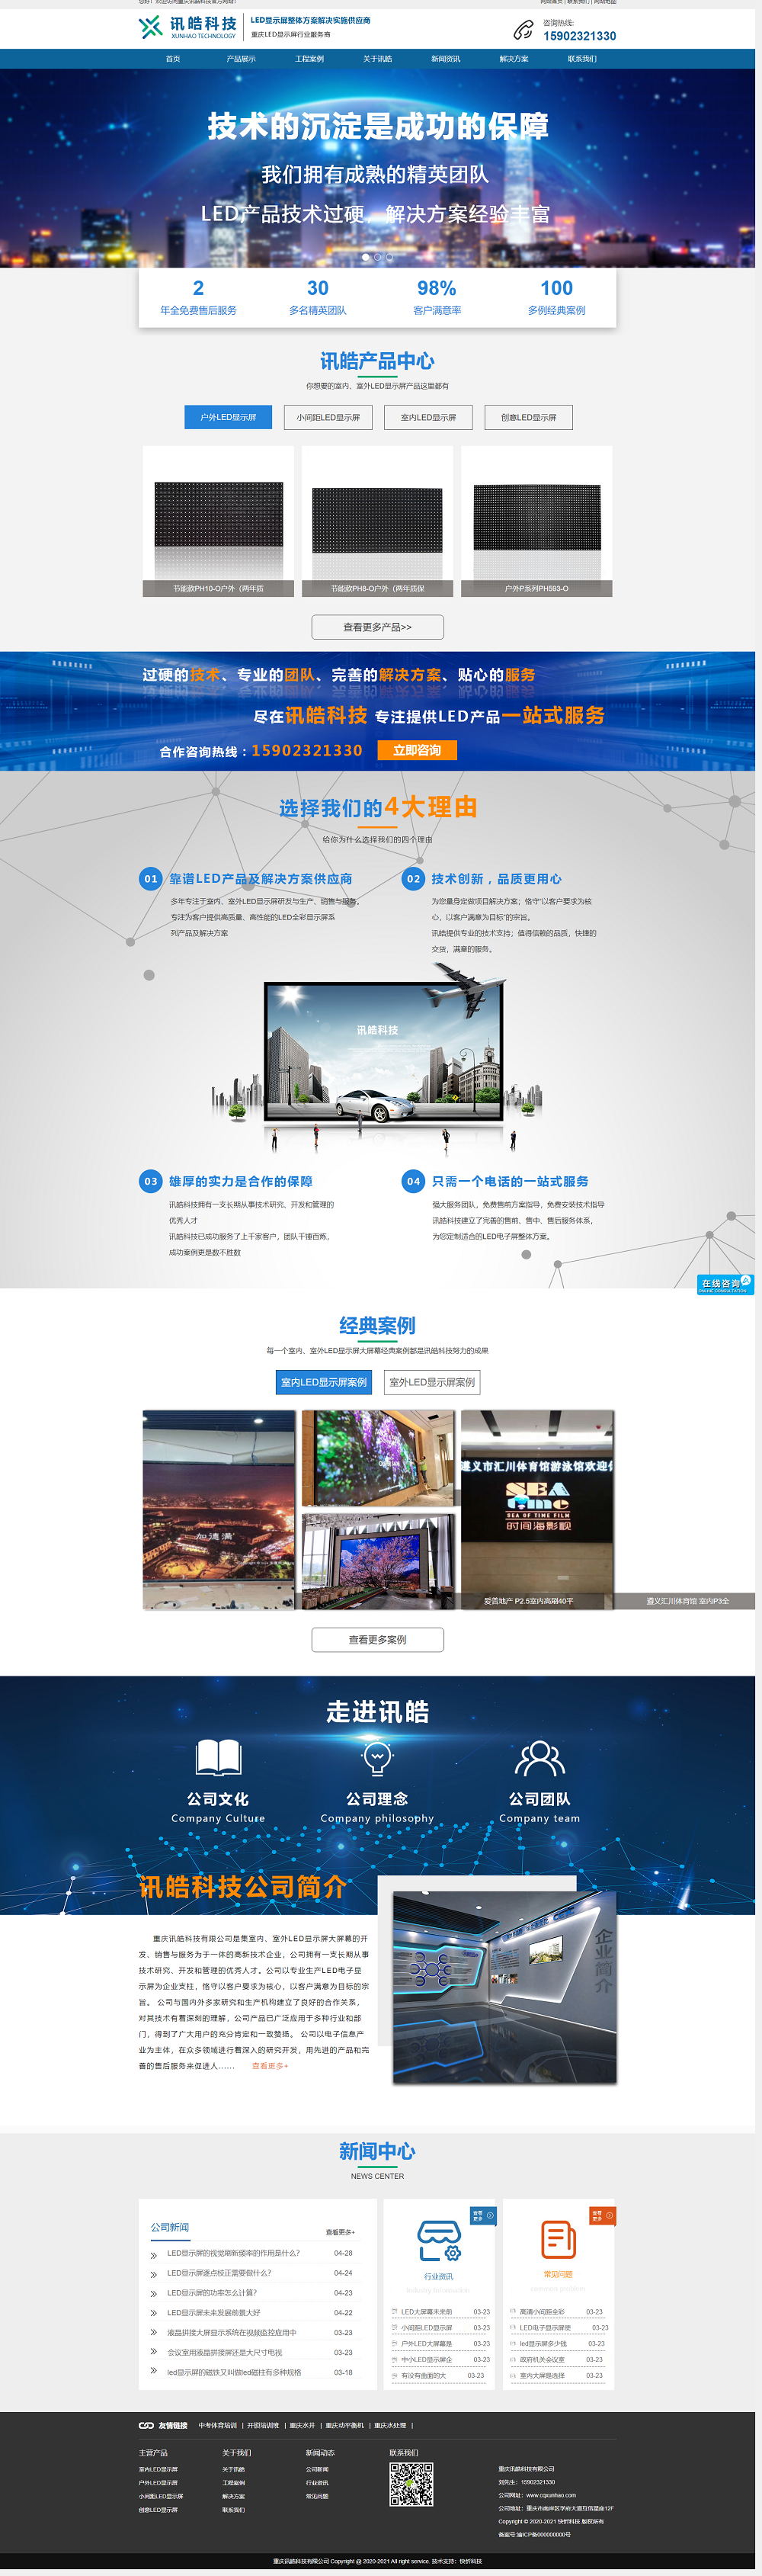 重庆讯皓科技有限公司网站建设案例